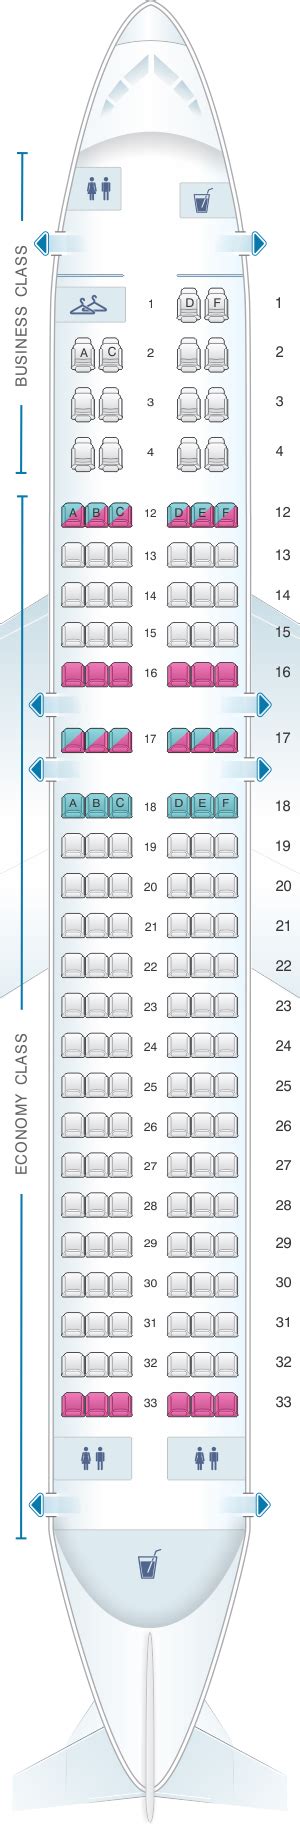 Air Canada Airbus A320 Seating Chart